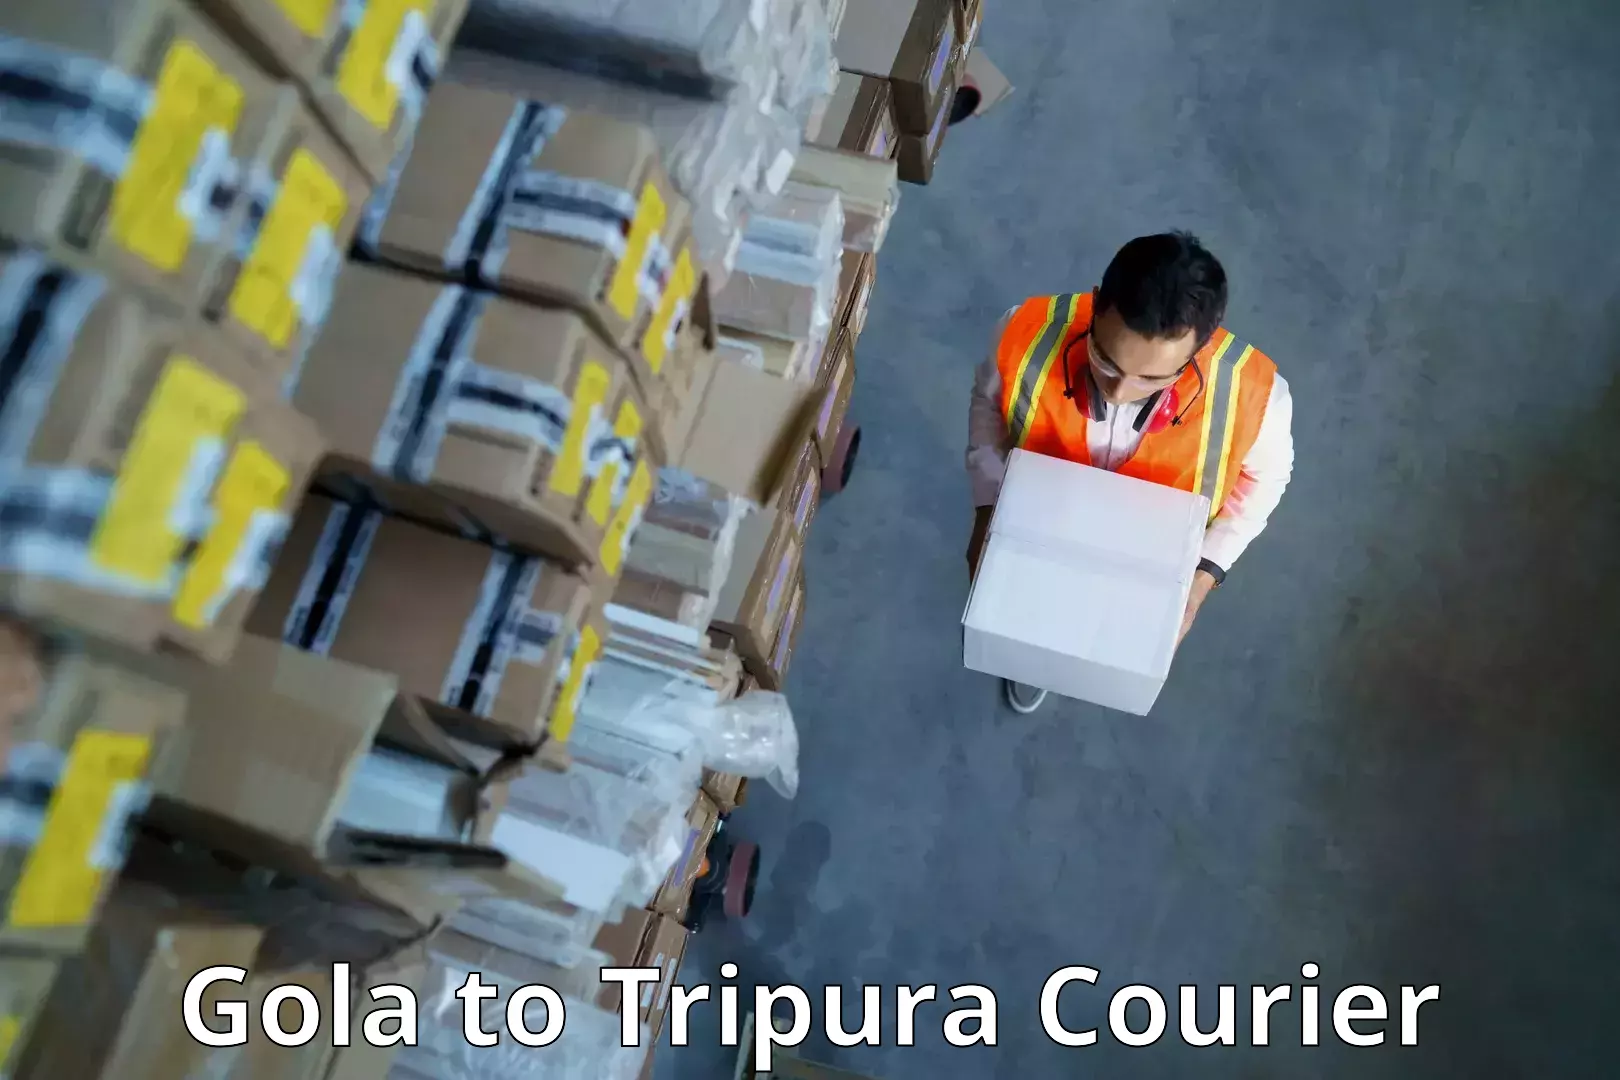 Pharmaceutical courier Gola to Udaipur Tripura